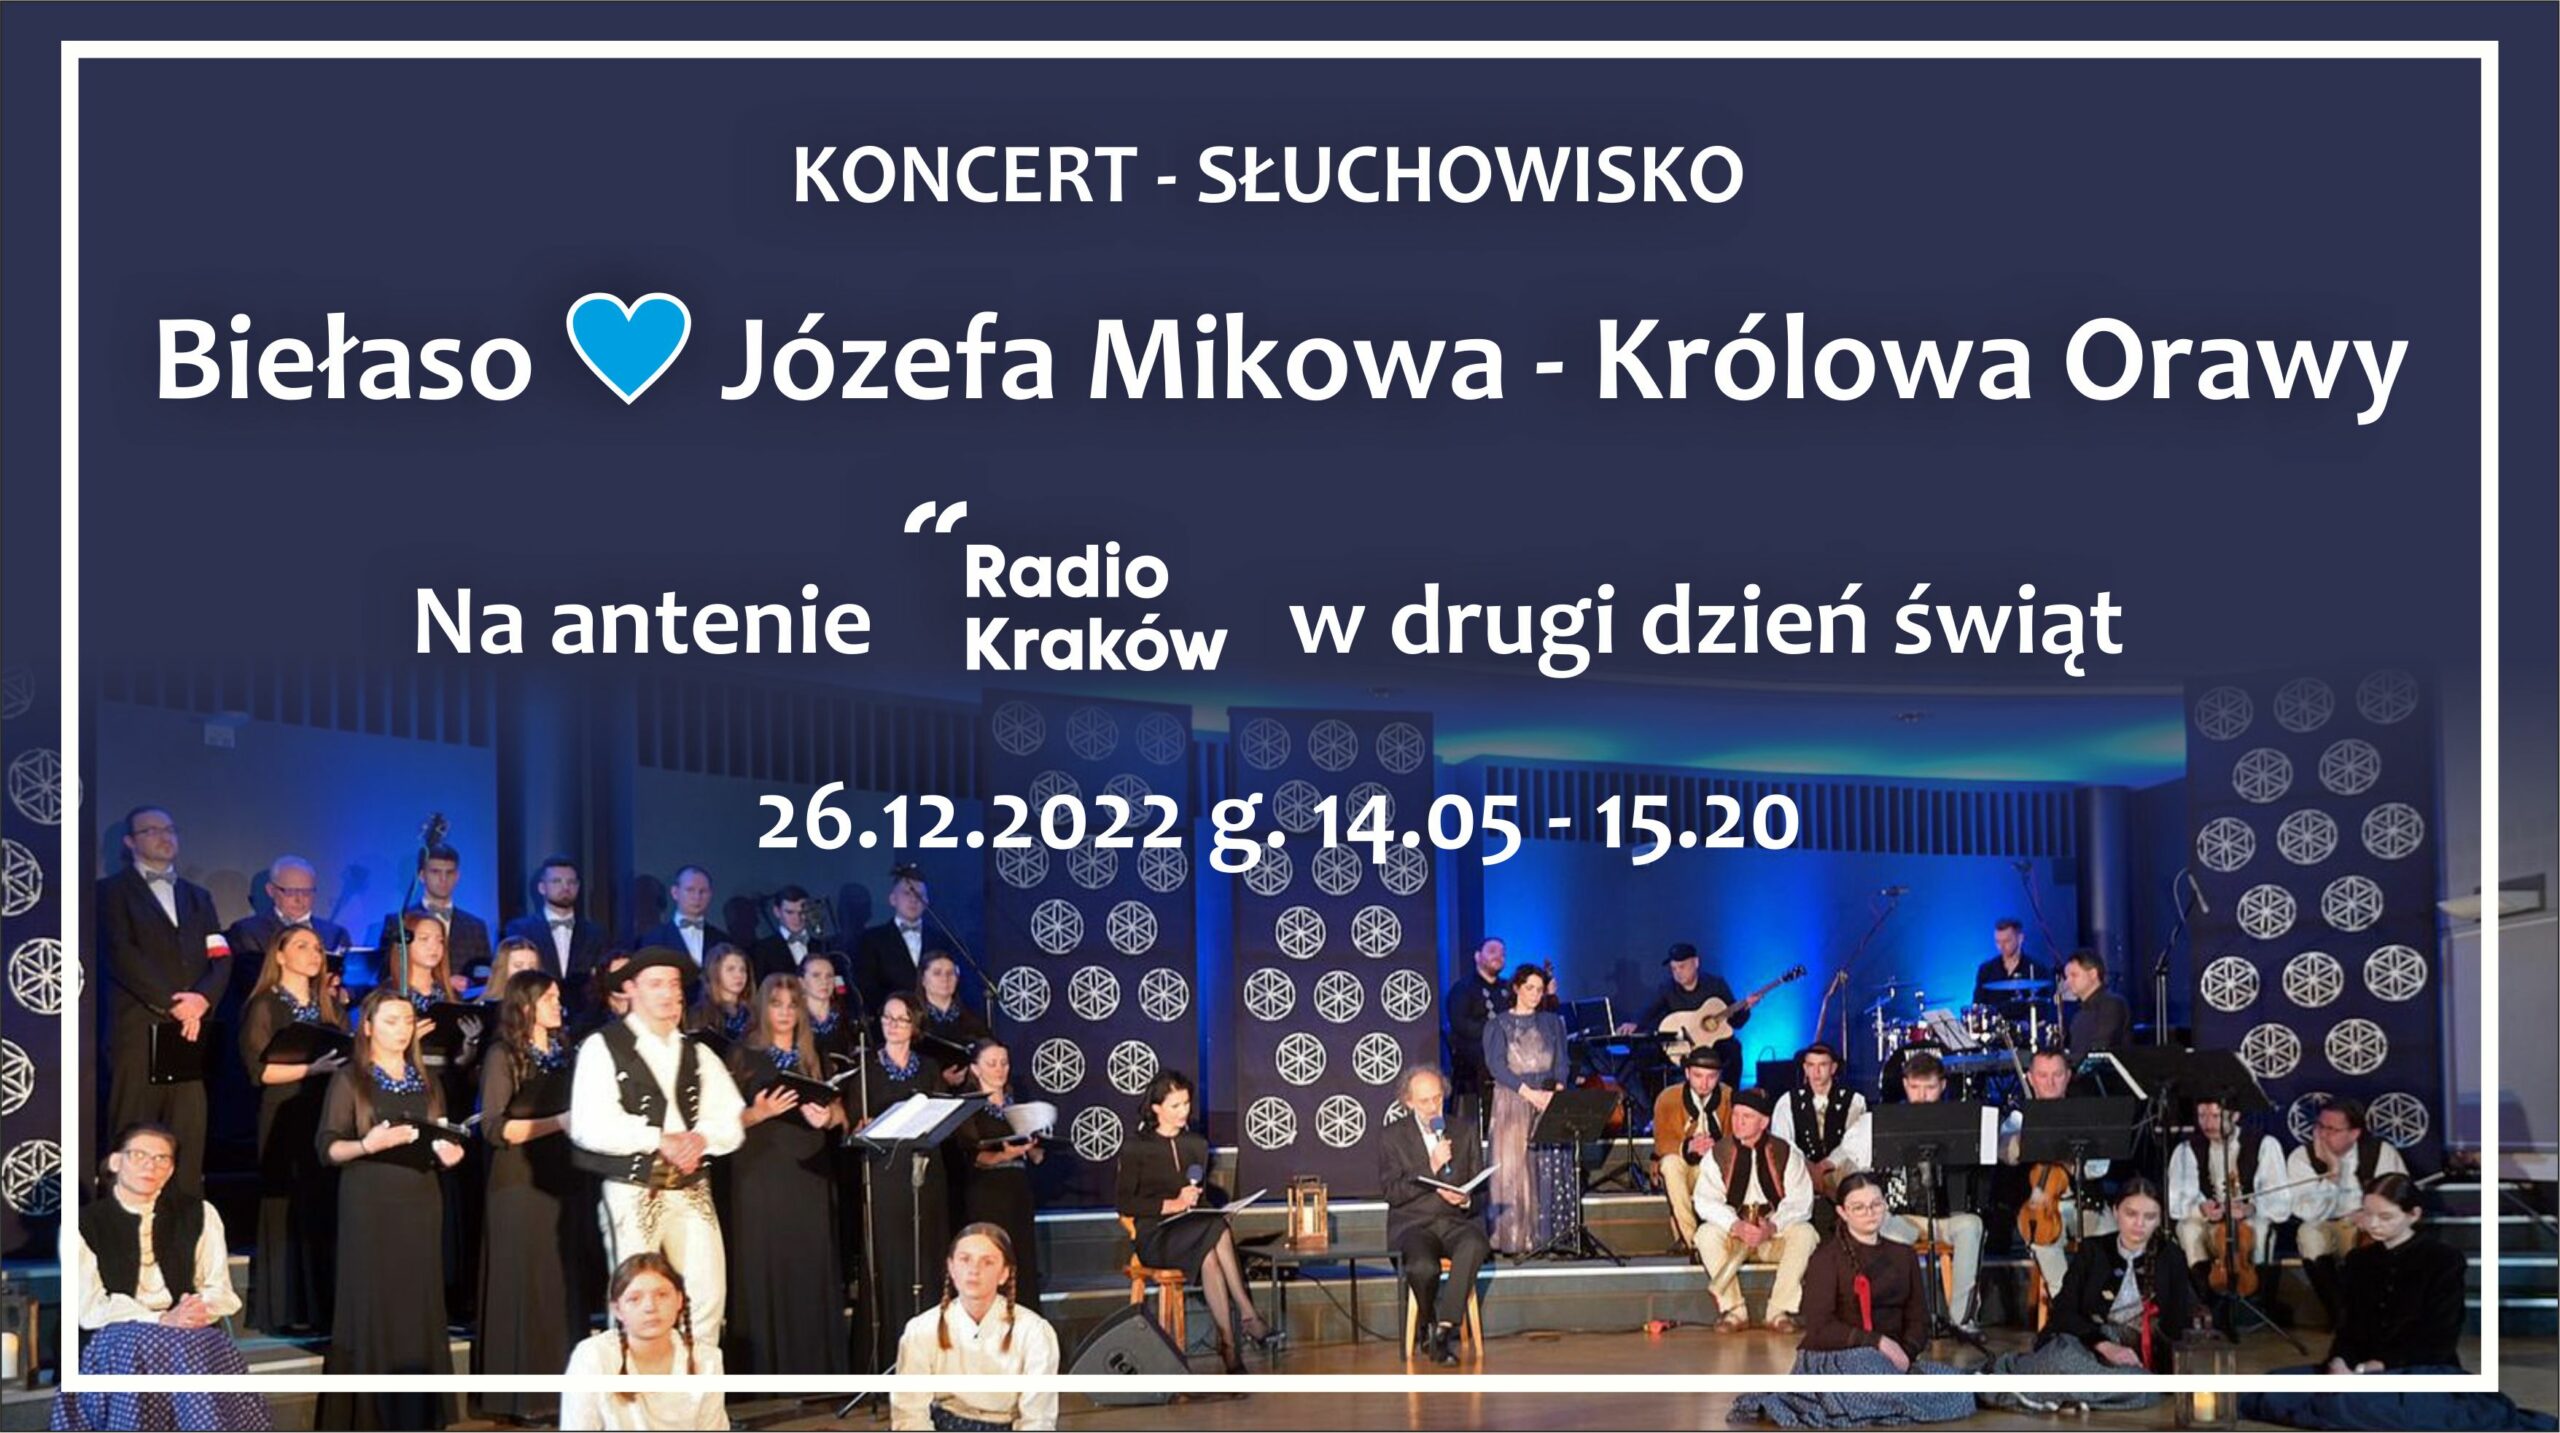 Muzyczne słuchowisko "Biełaso💙. Józefa Mikowa - królowa Orawy" w święta na antenie Radia Kraków